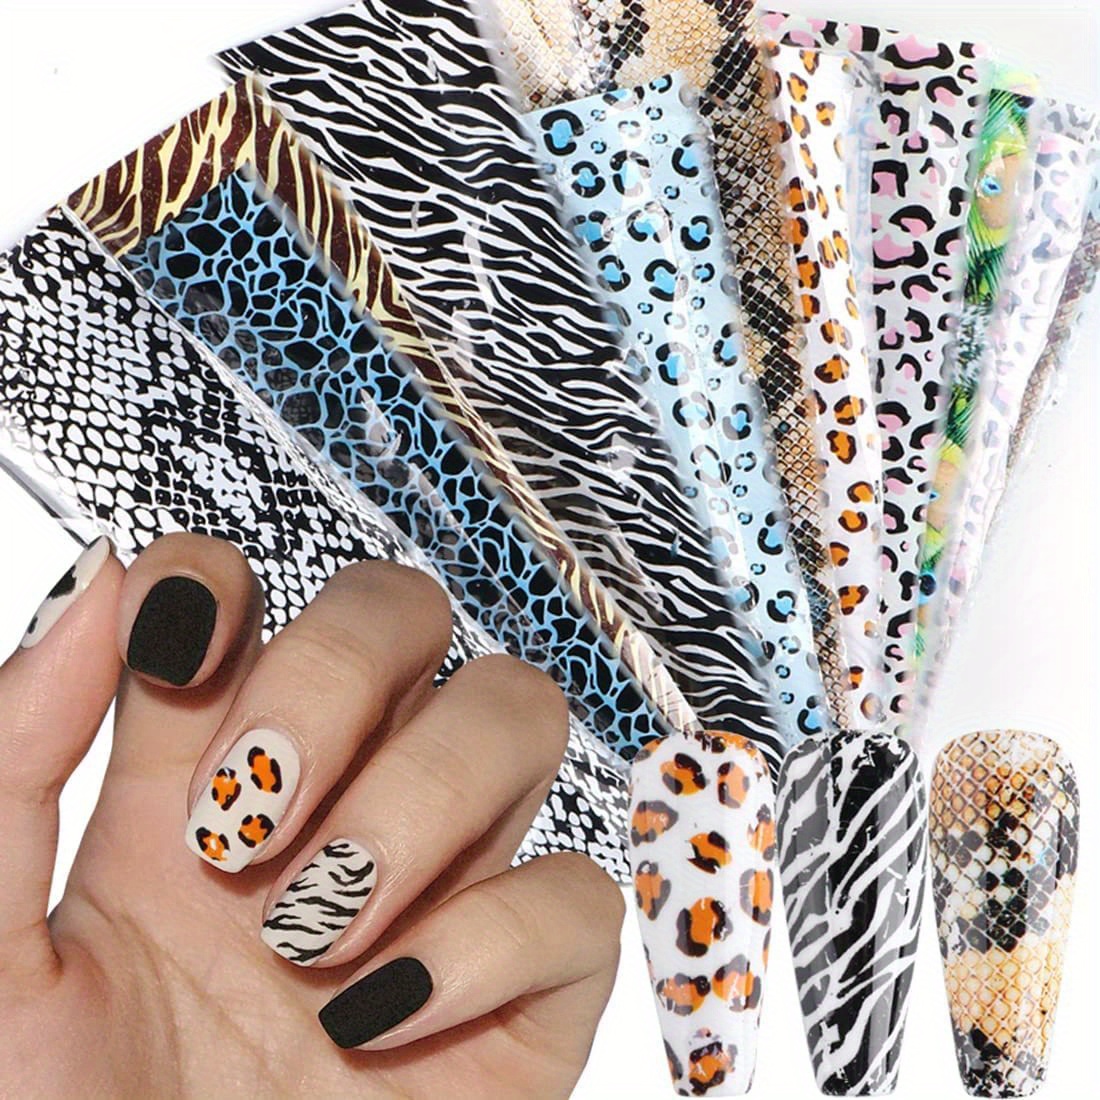 acrylic nail designs with cheetah